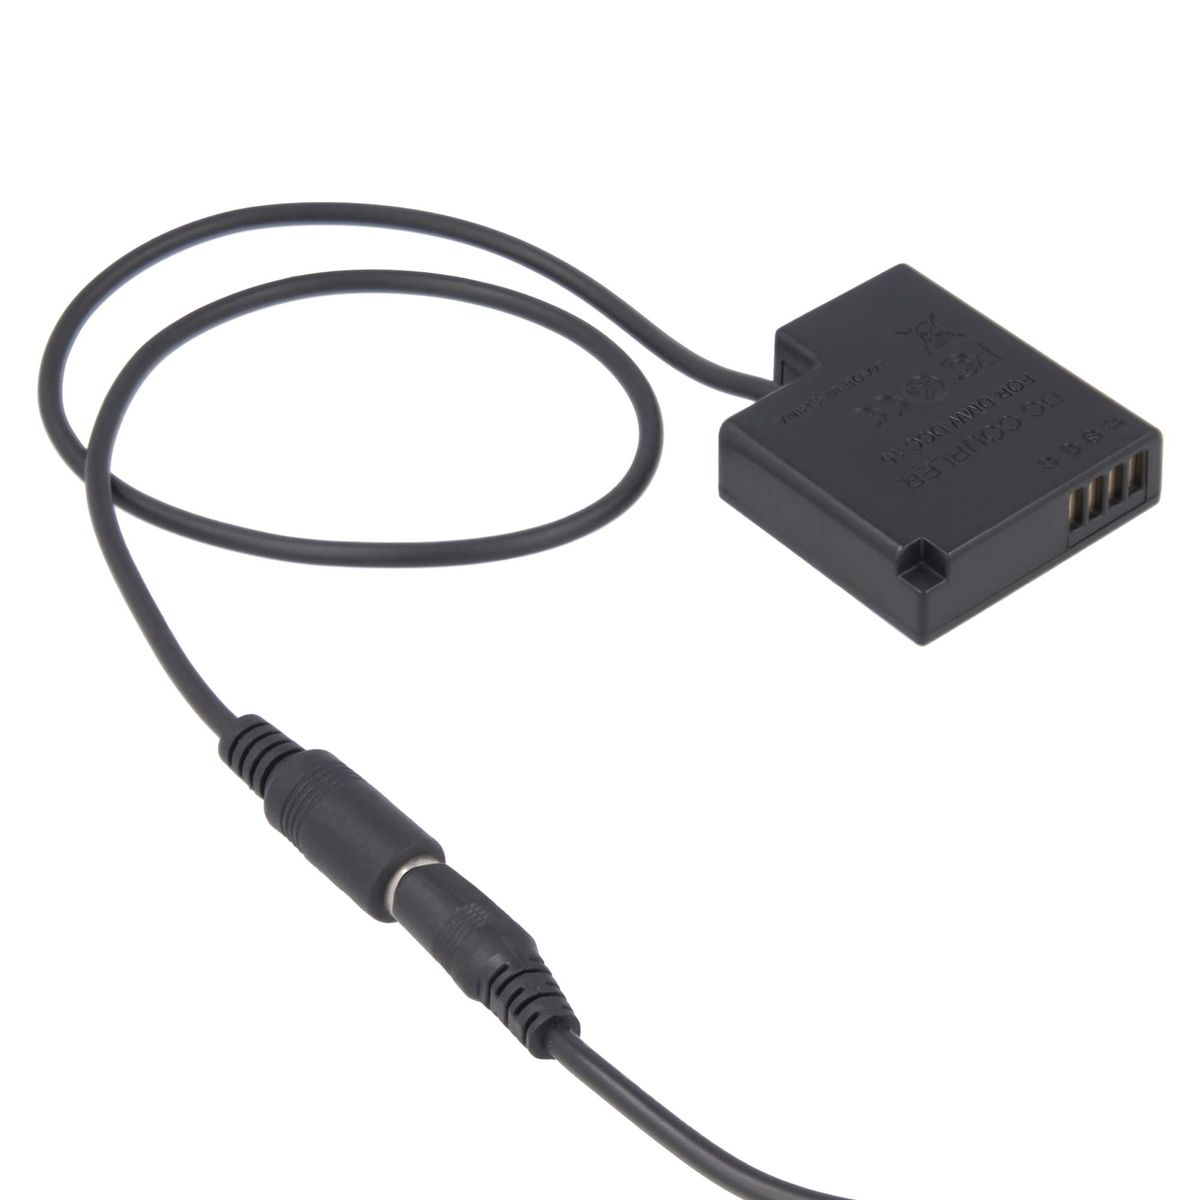 AKKU-KING USB Adapter DCC15 + Ladegerät kompatibel keine mit Panasonic Kuppler Angabe Panasonic